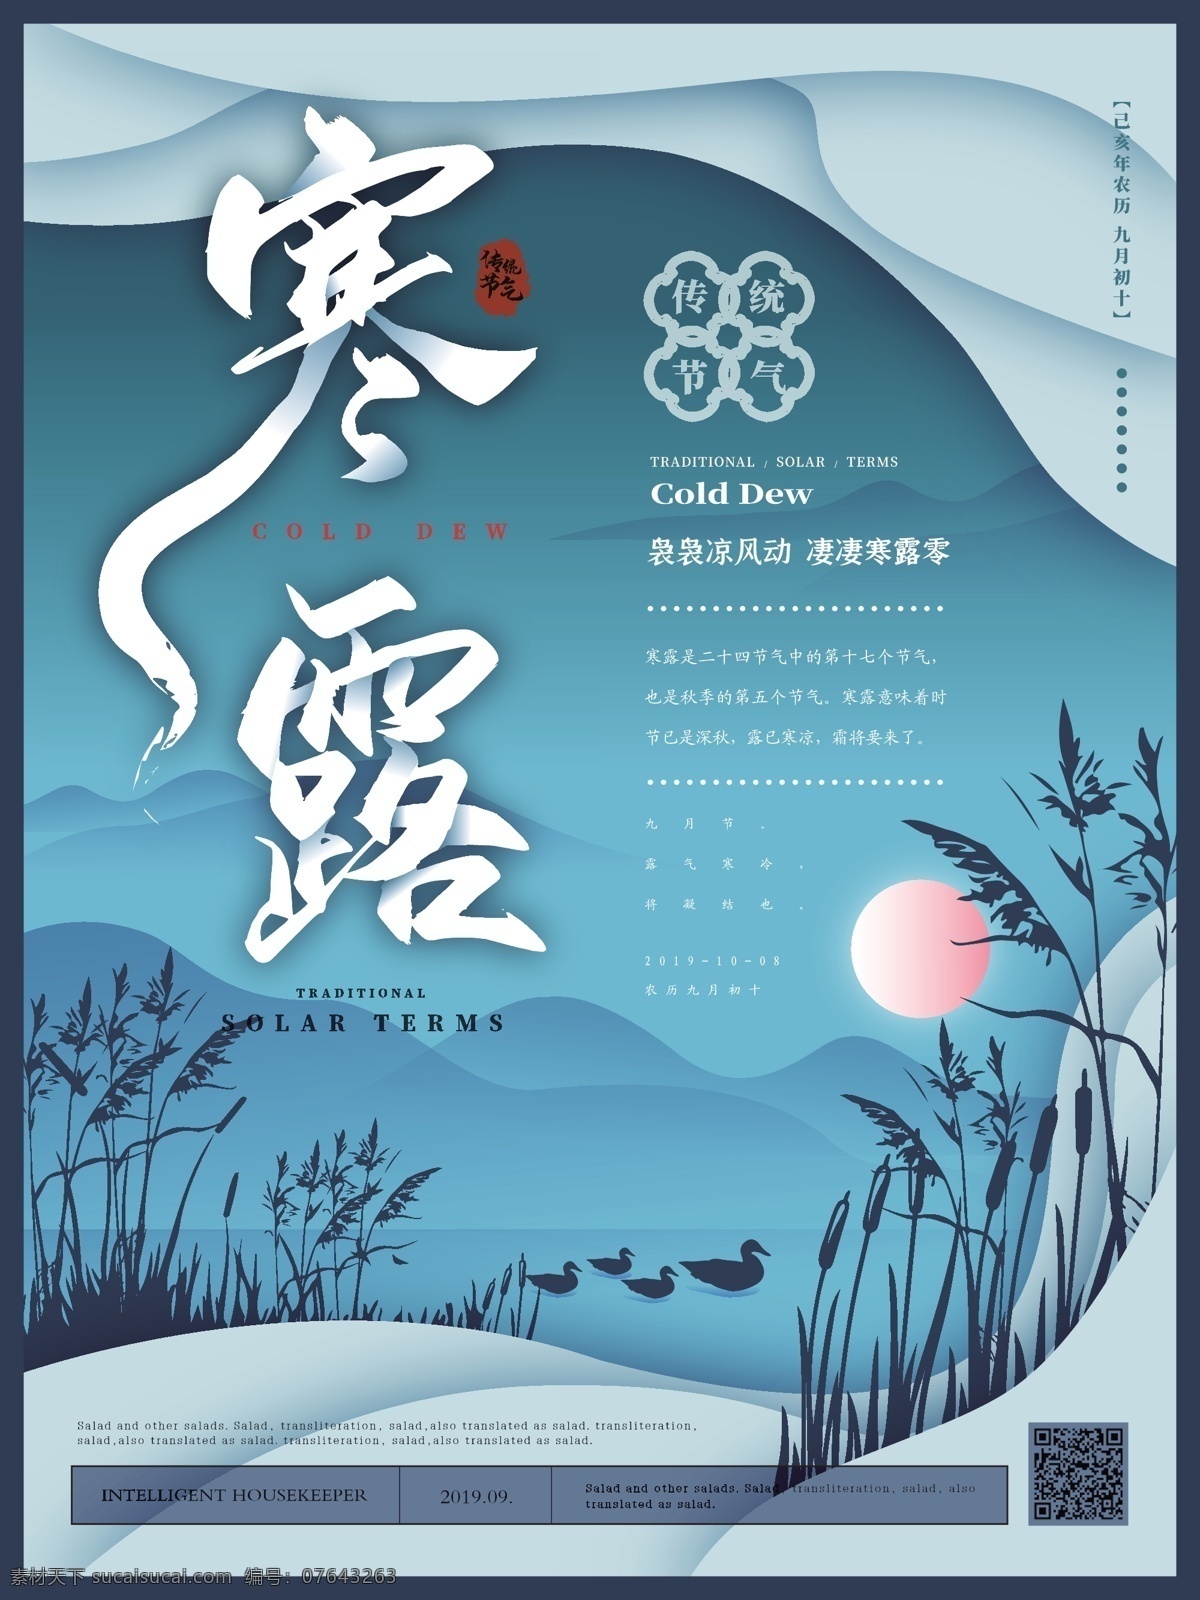 简约 原创 寒露 节气 主题 海报 中国风 雅致 传统节气 远山 芦苇 野鸭湖 节日海报